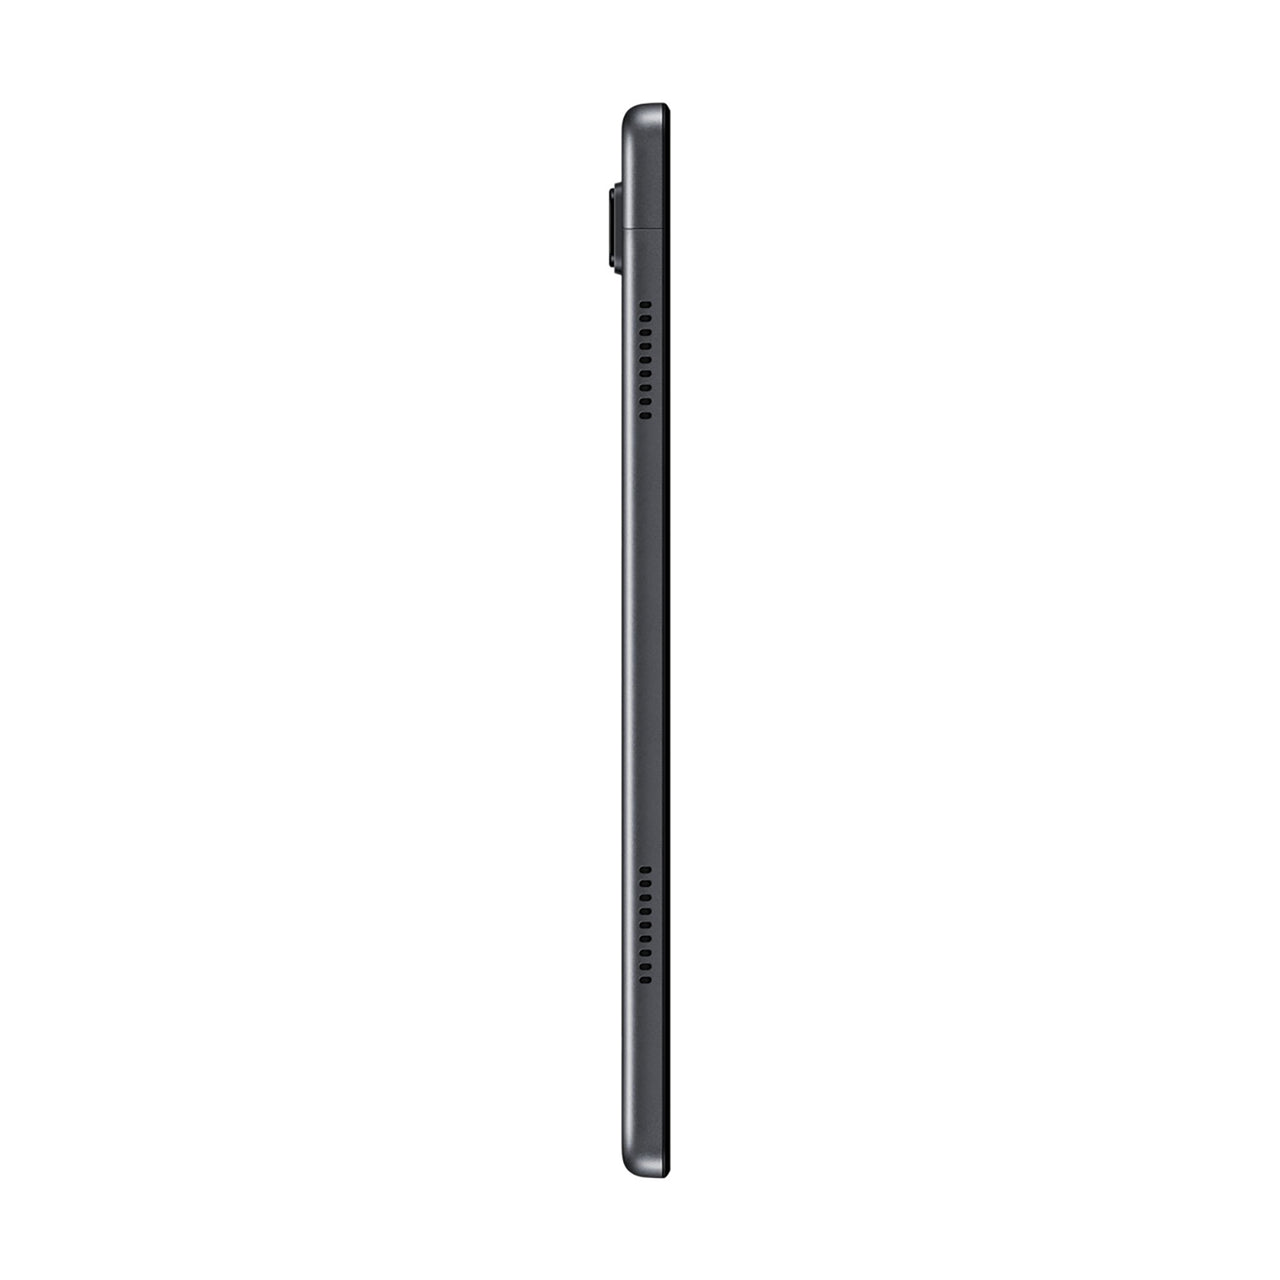 Samsung Galaxy Tab A7 10.4" 4G LTE 64GB - Grey